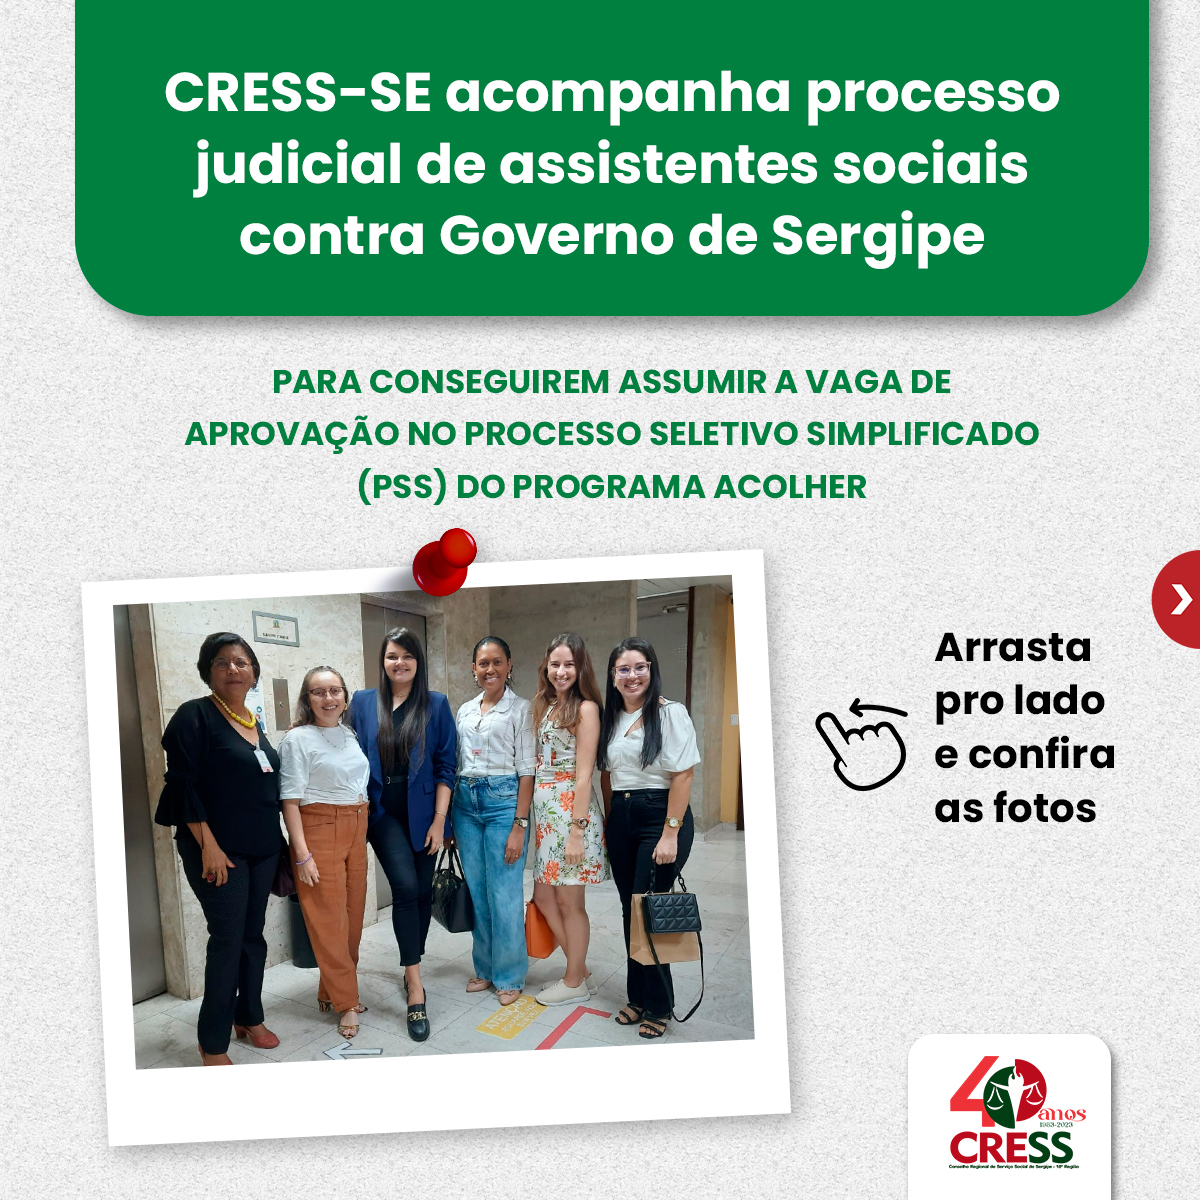 CRESS-SE acompanha processo de assistentes sociais contra Governo de Sergipe para assumirem vaga no PSS do Programa Acolher